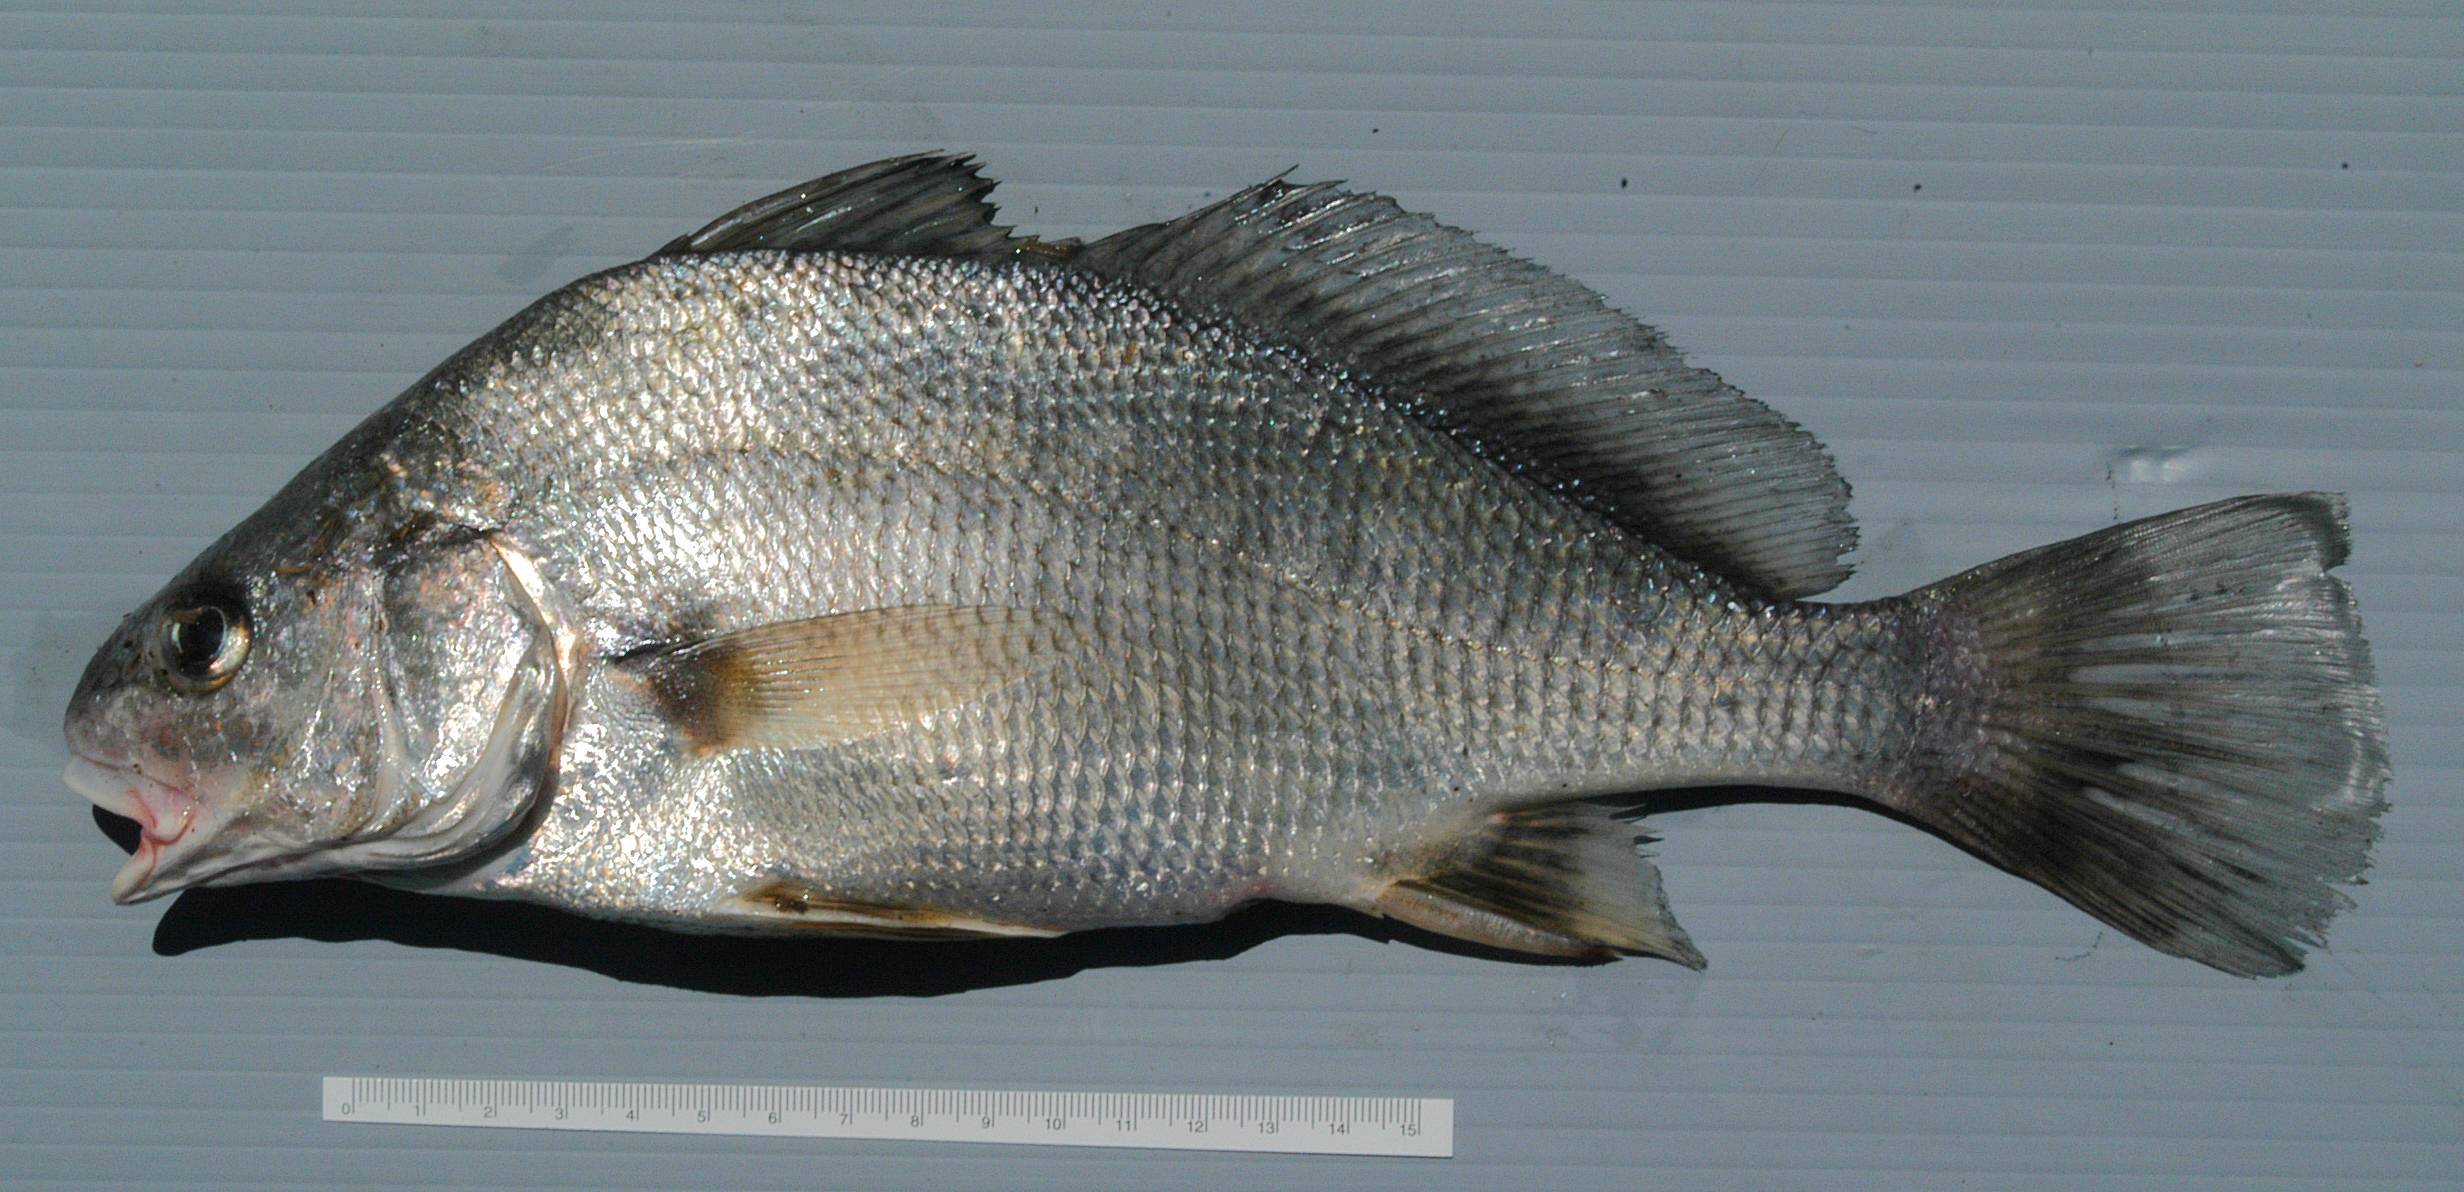 Горбыль красный фото и описание – каталог рыб, смотреть онлайн